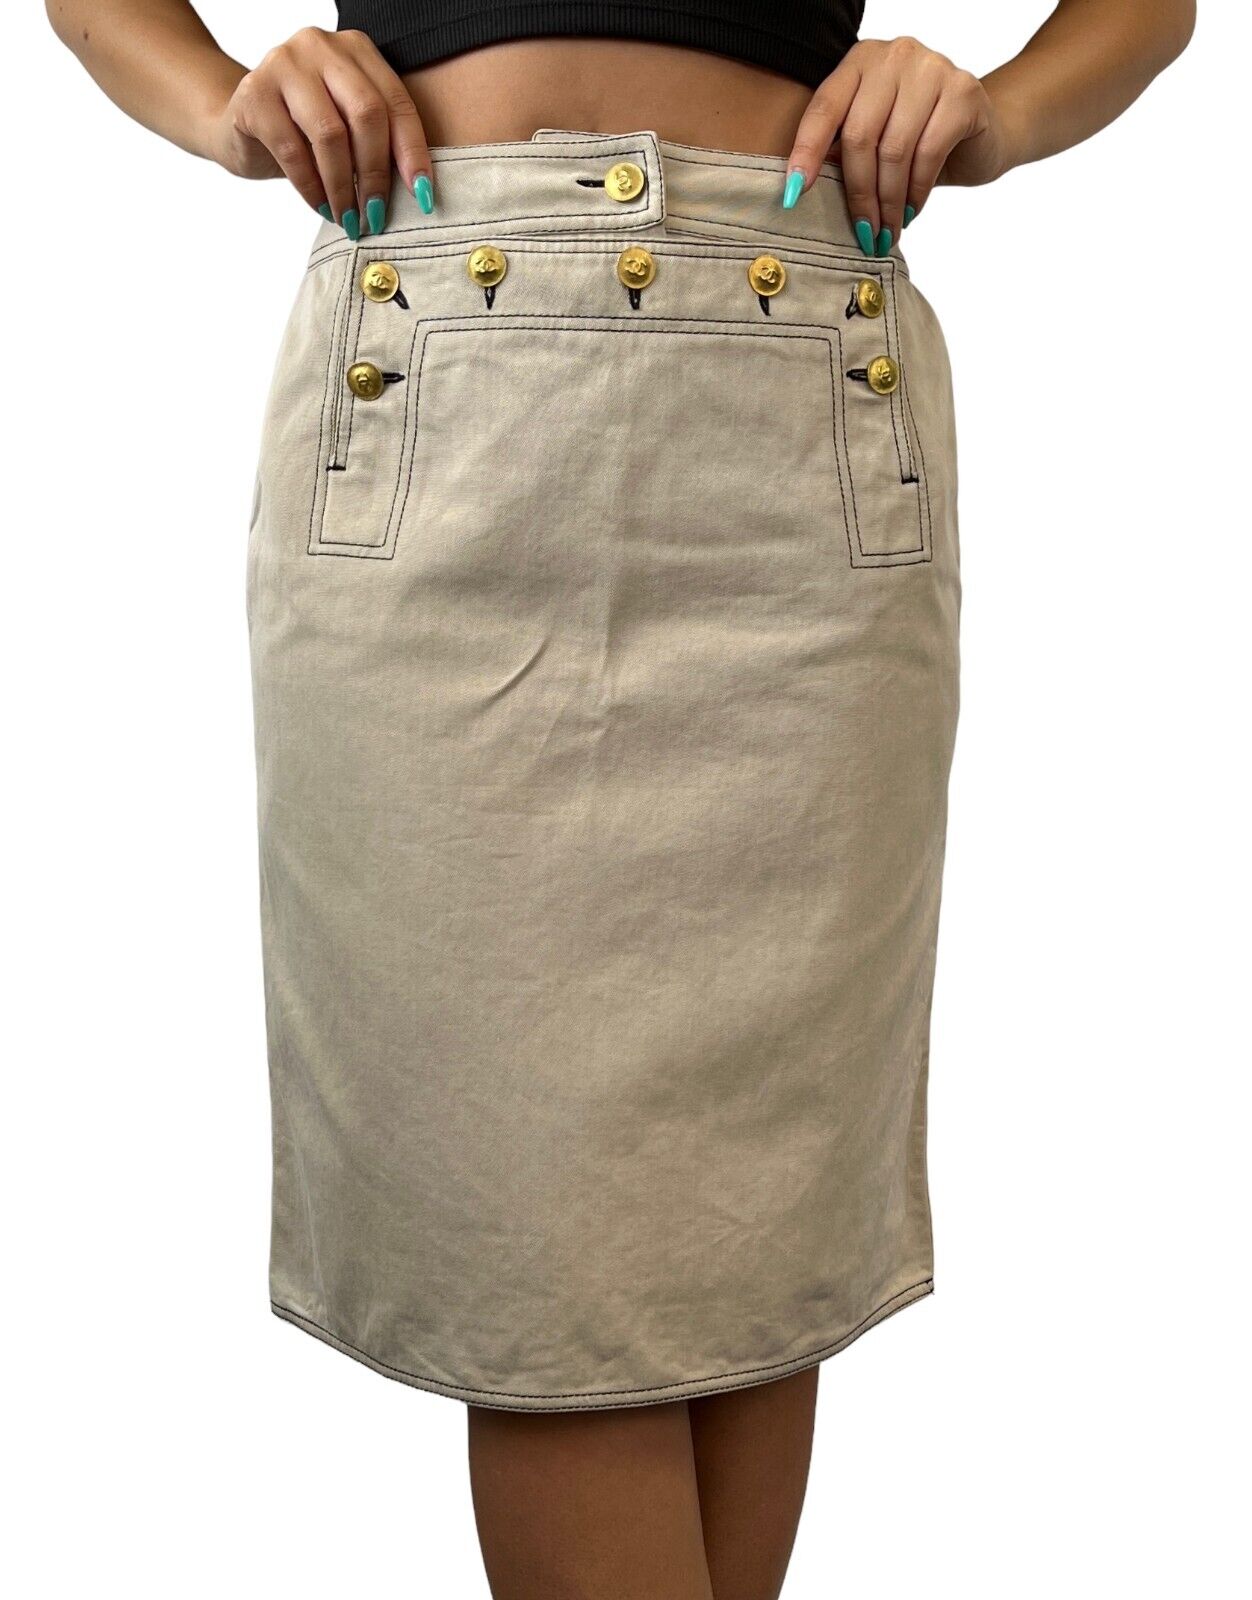 CHANEL Vintage CC Mark Gold Button Skirt #40 Stitch Beige Cotton Rank AB